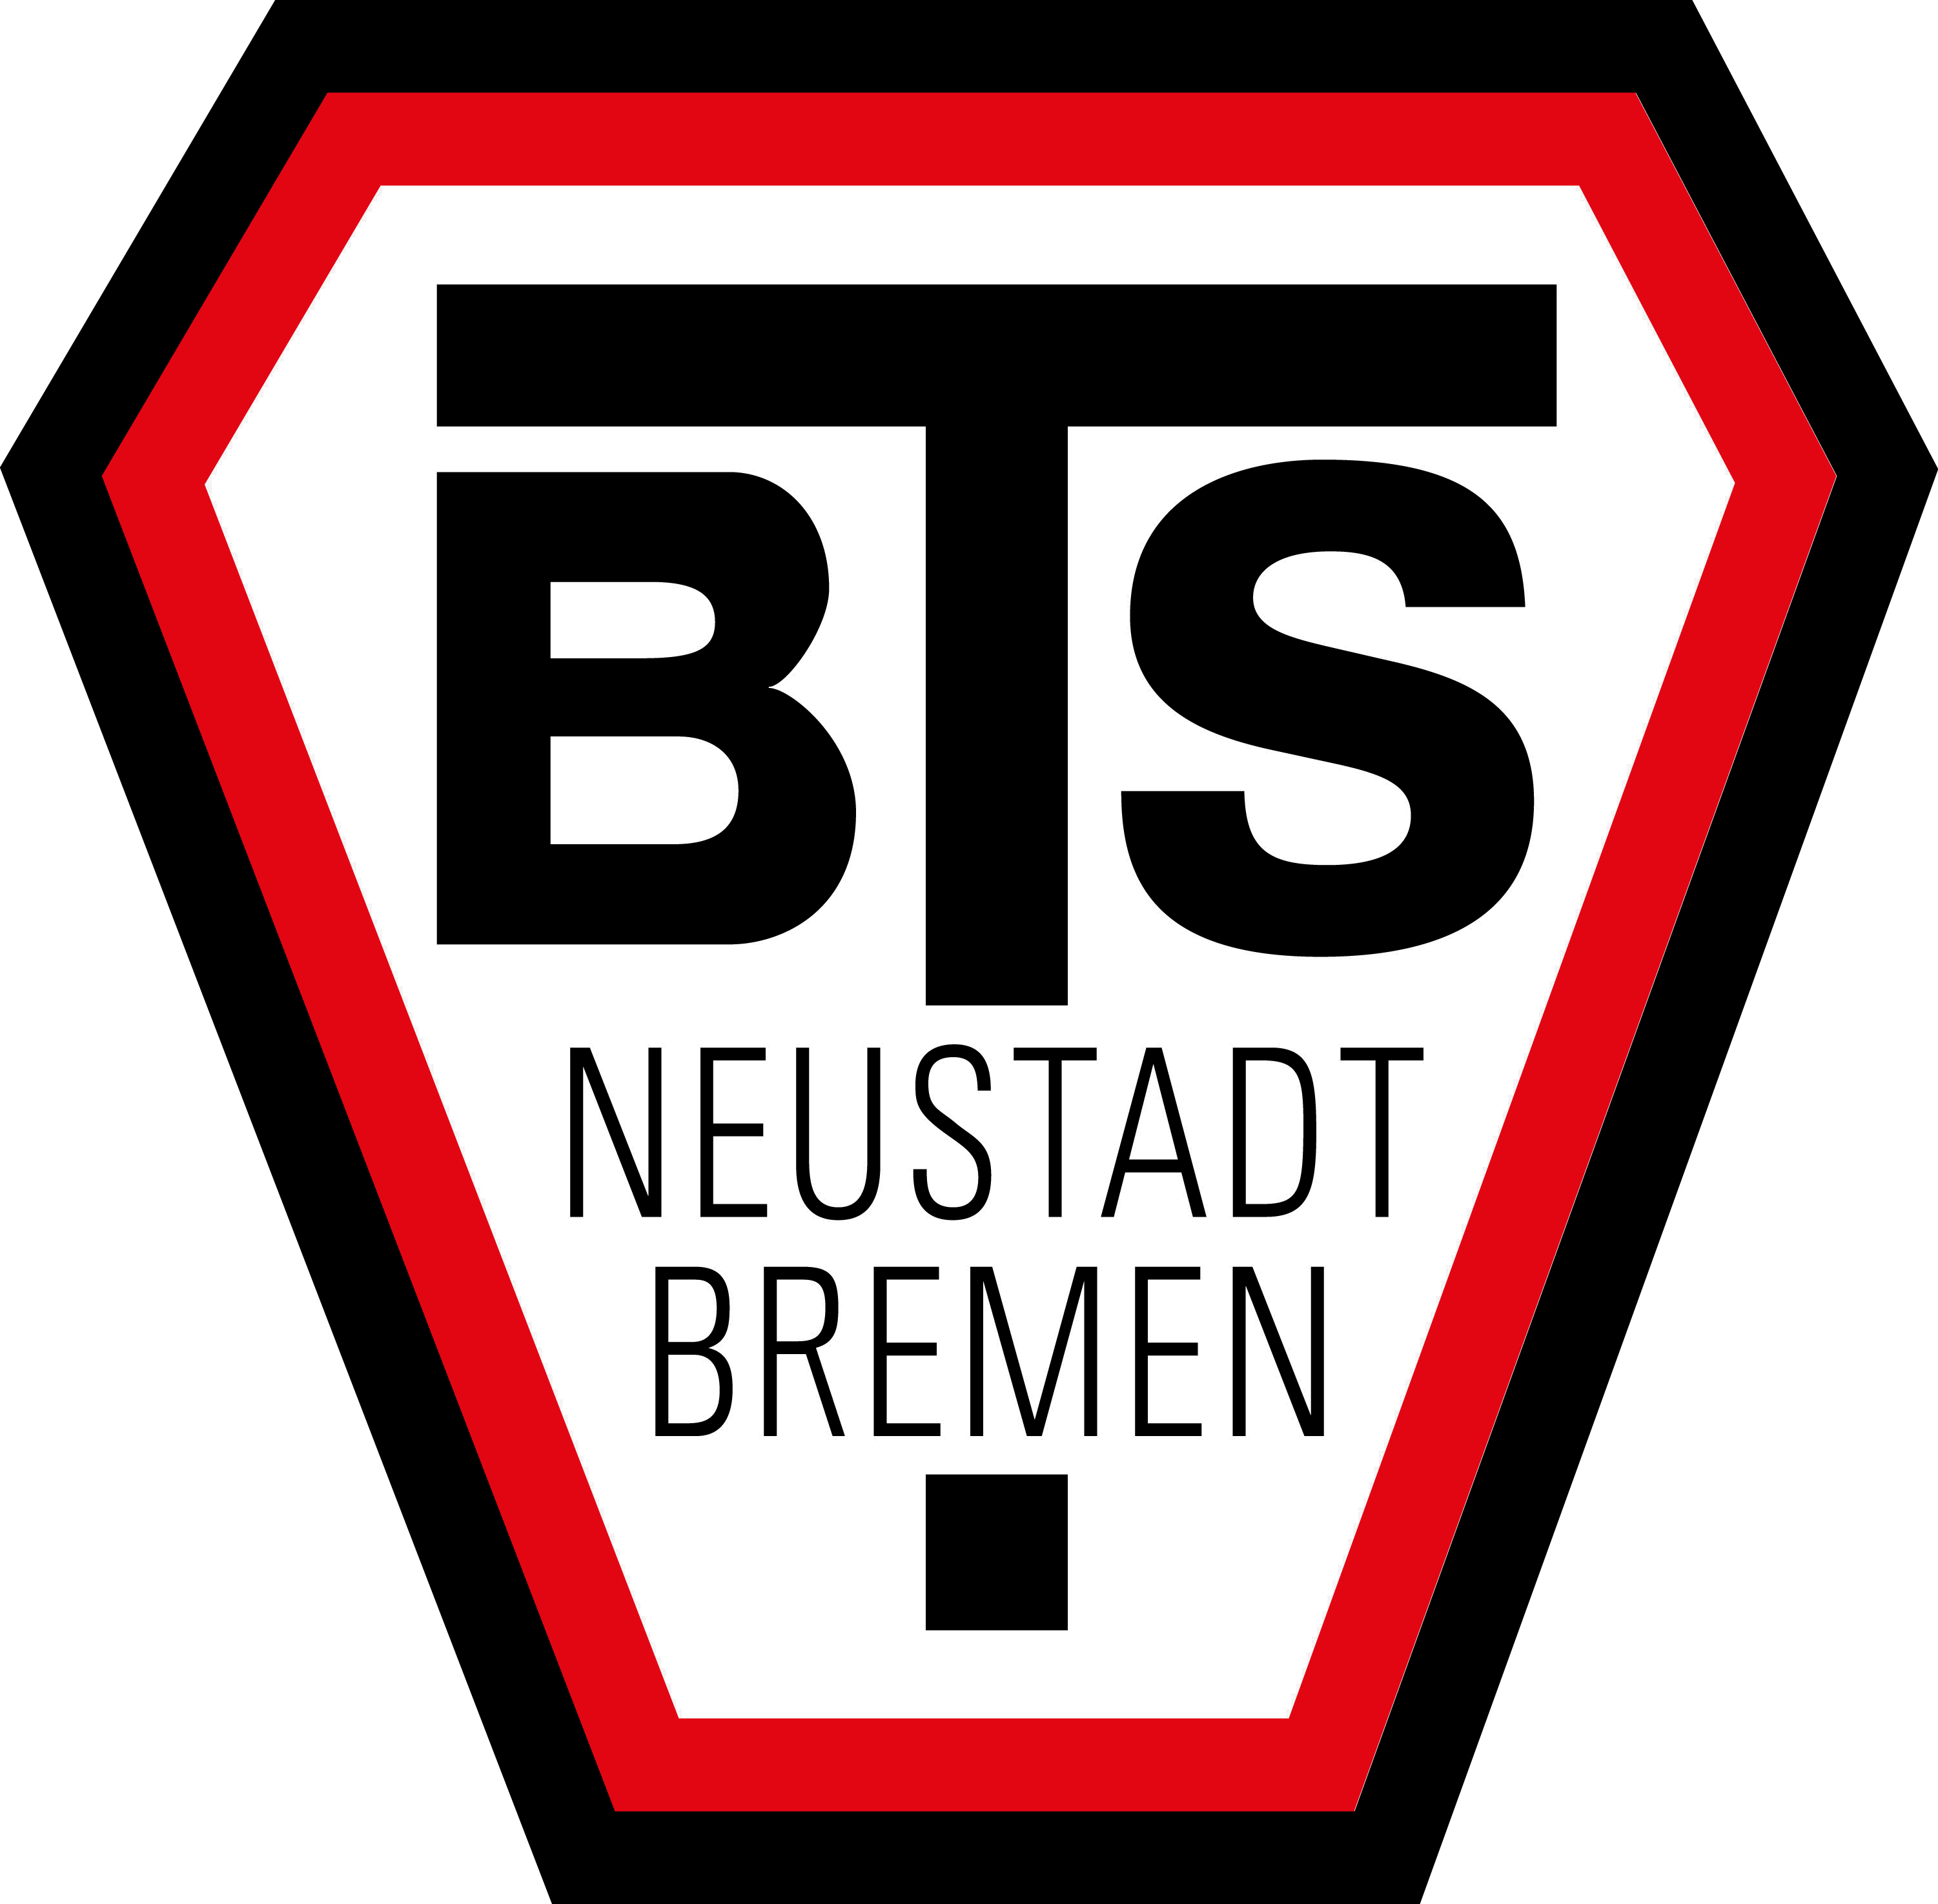 BTS Neustadt 